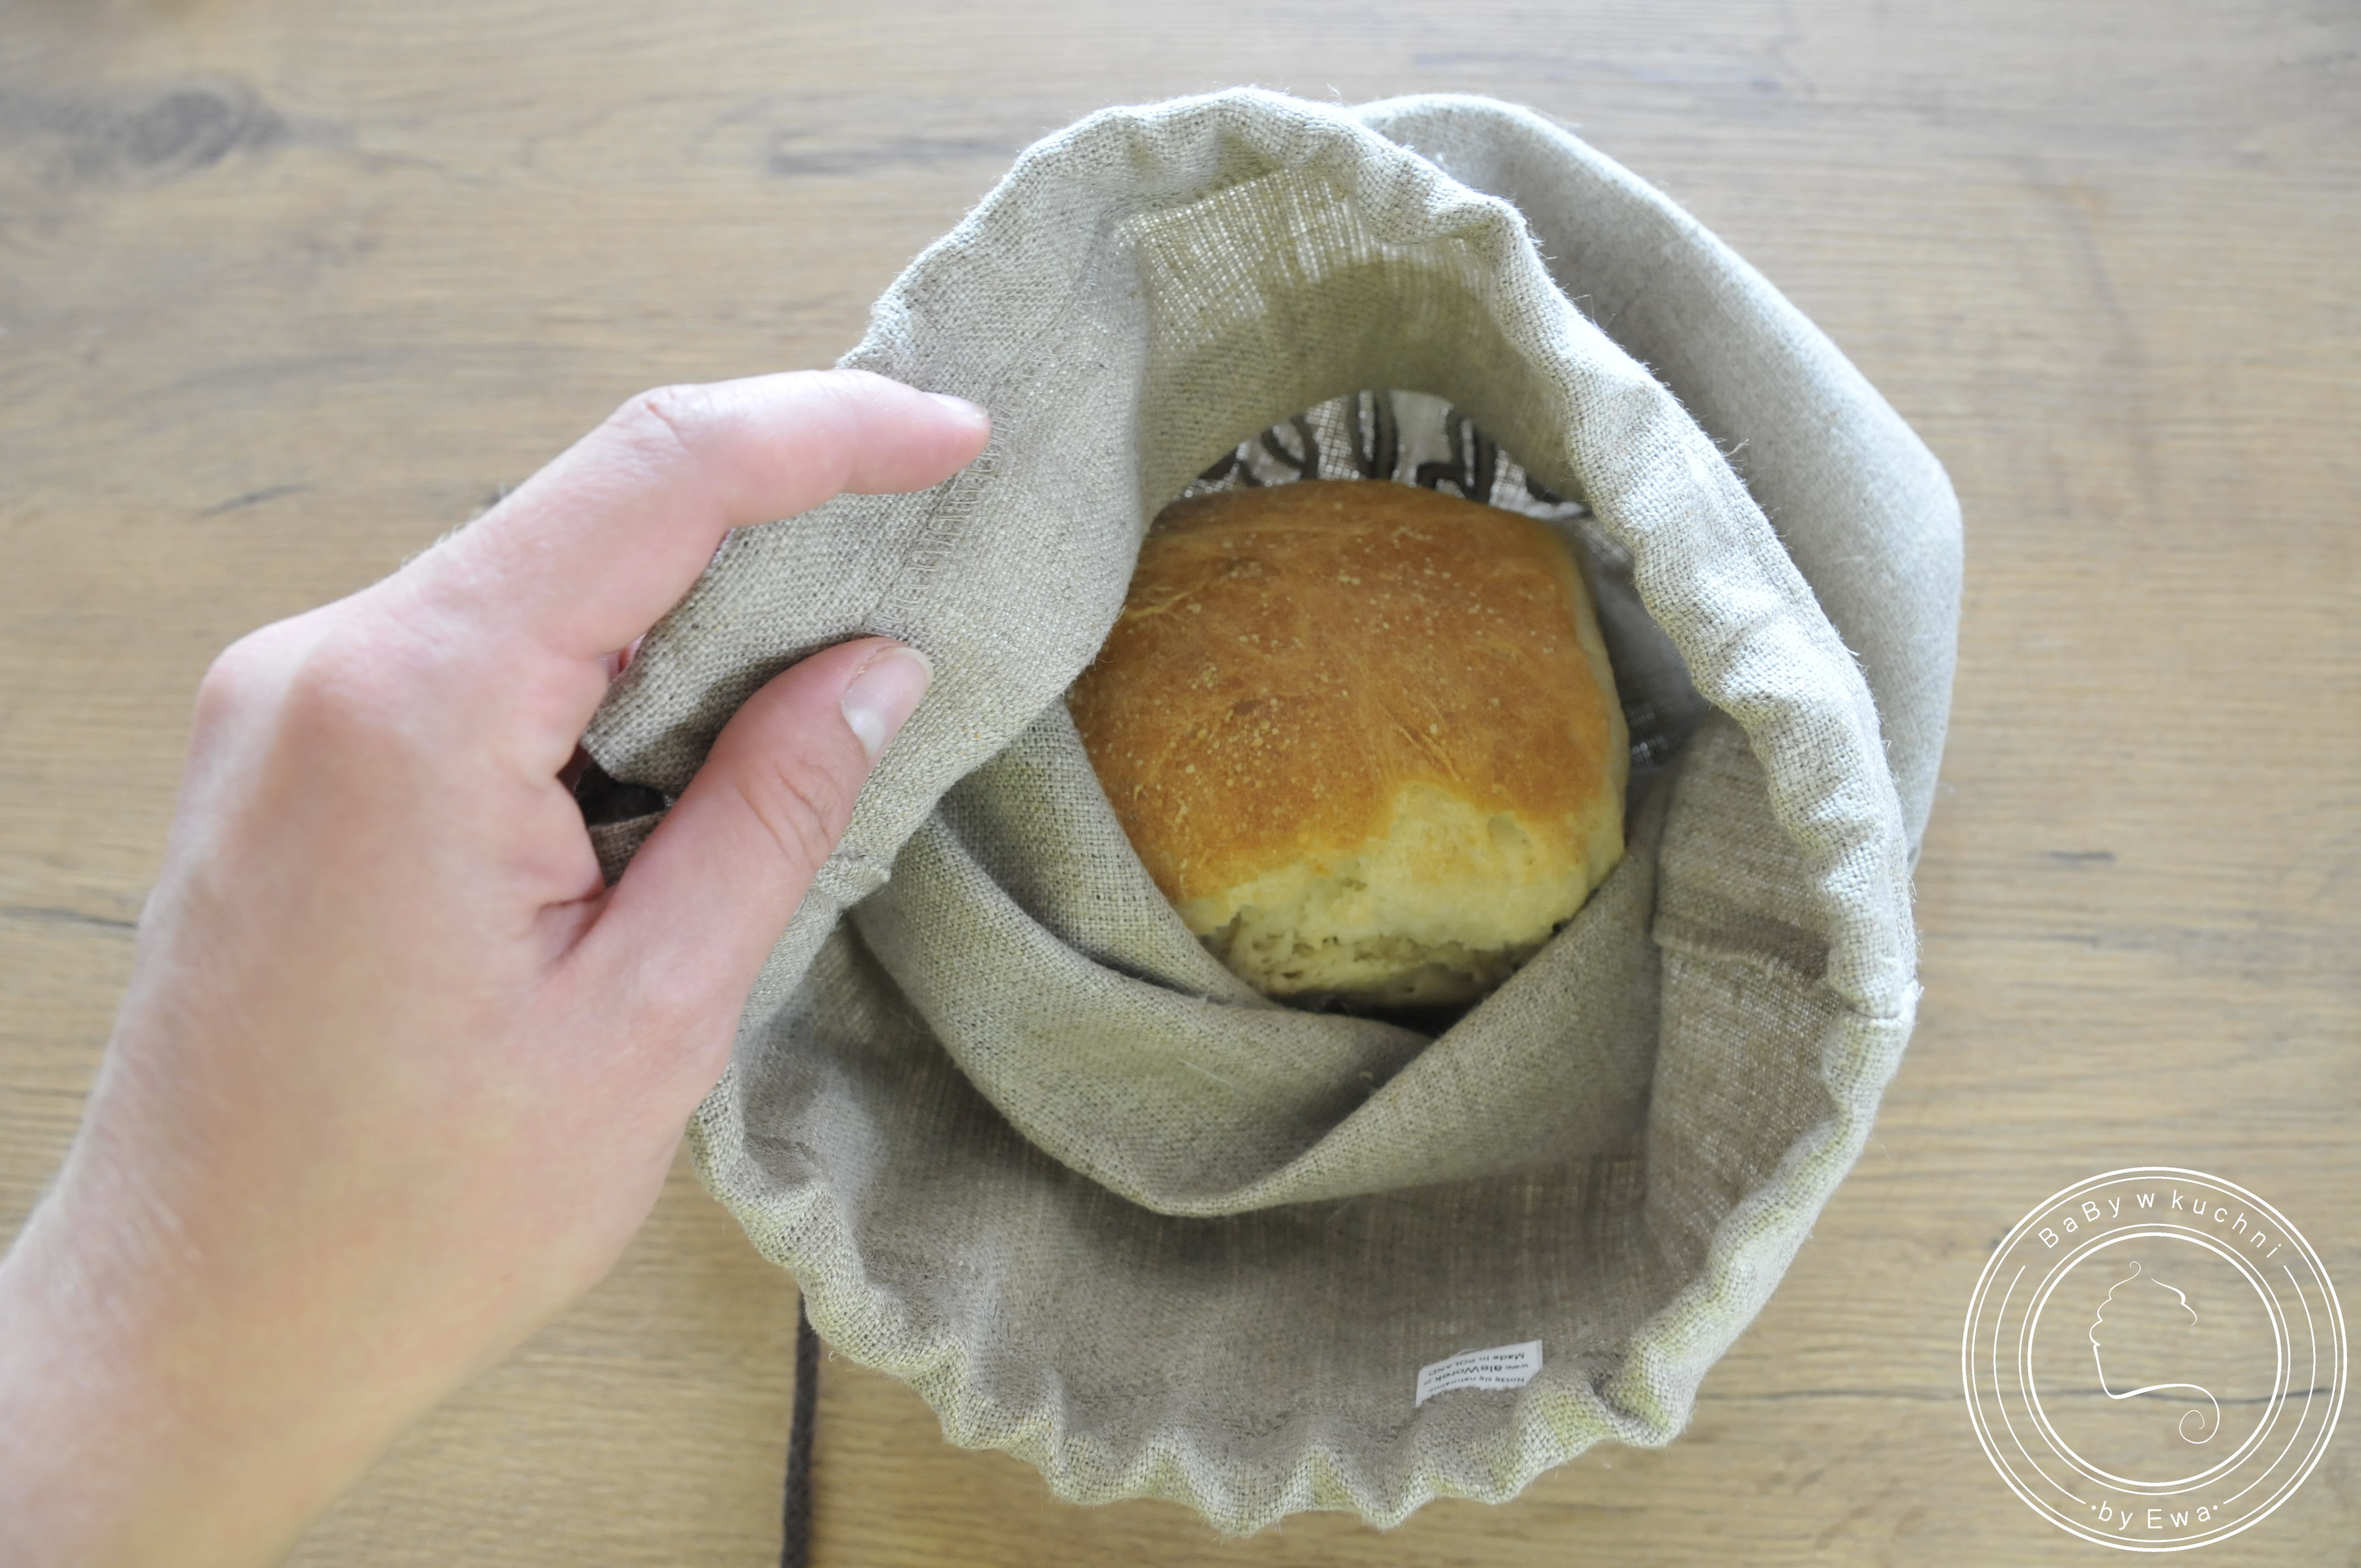 Lniany worek od AleWorek - jak przechowywać chleb